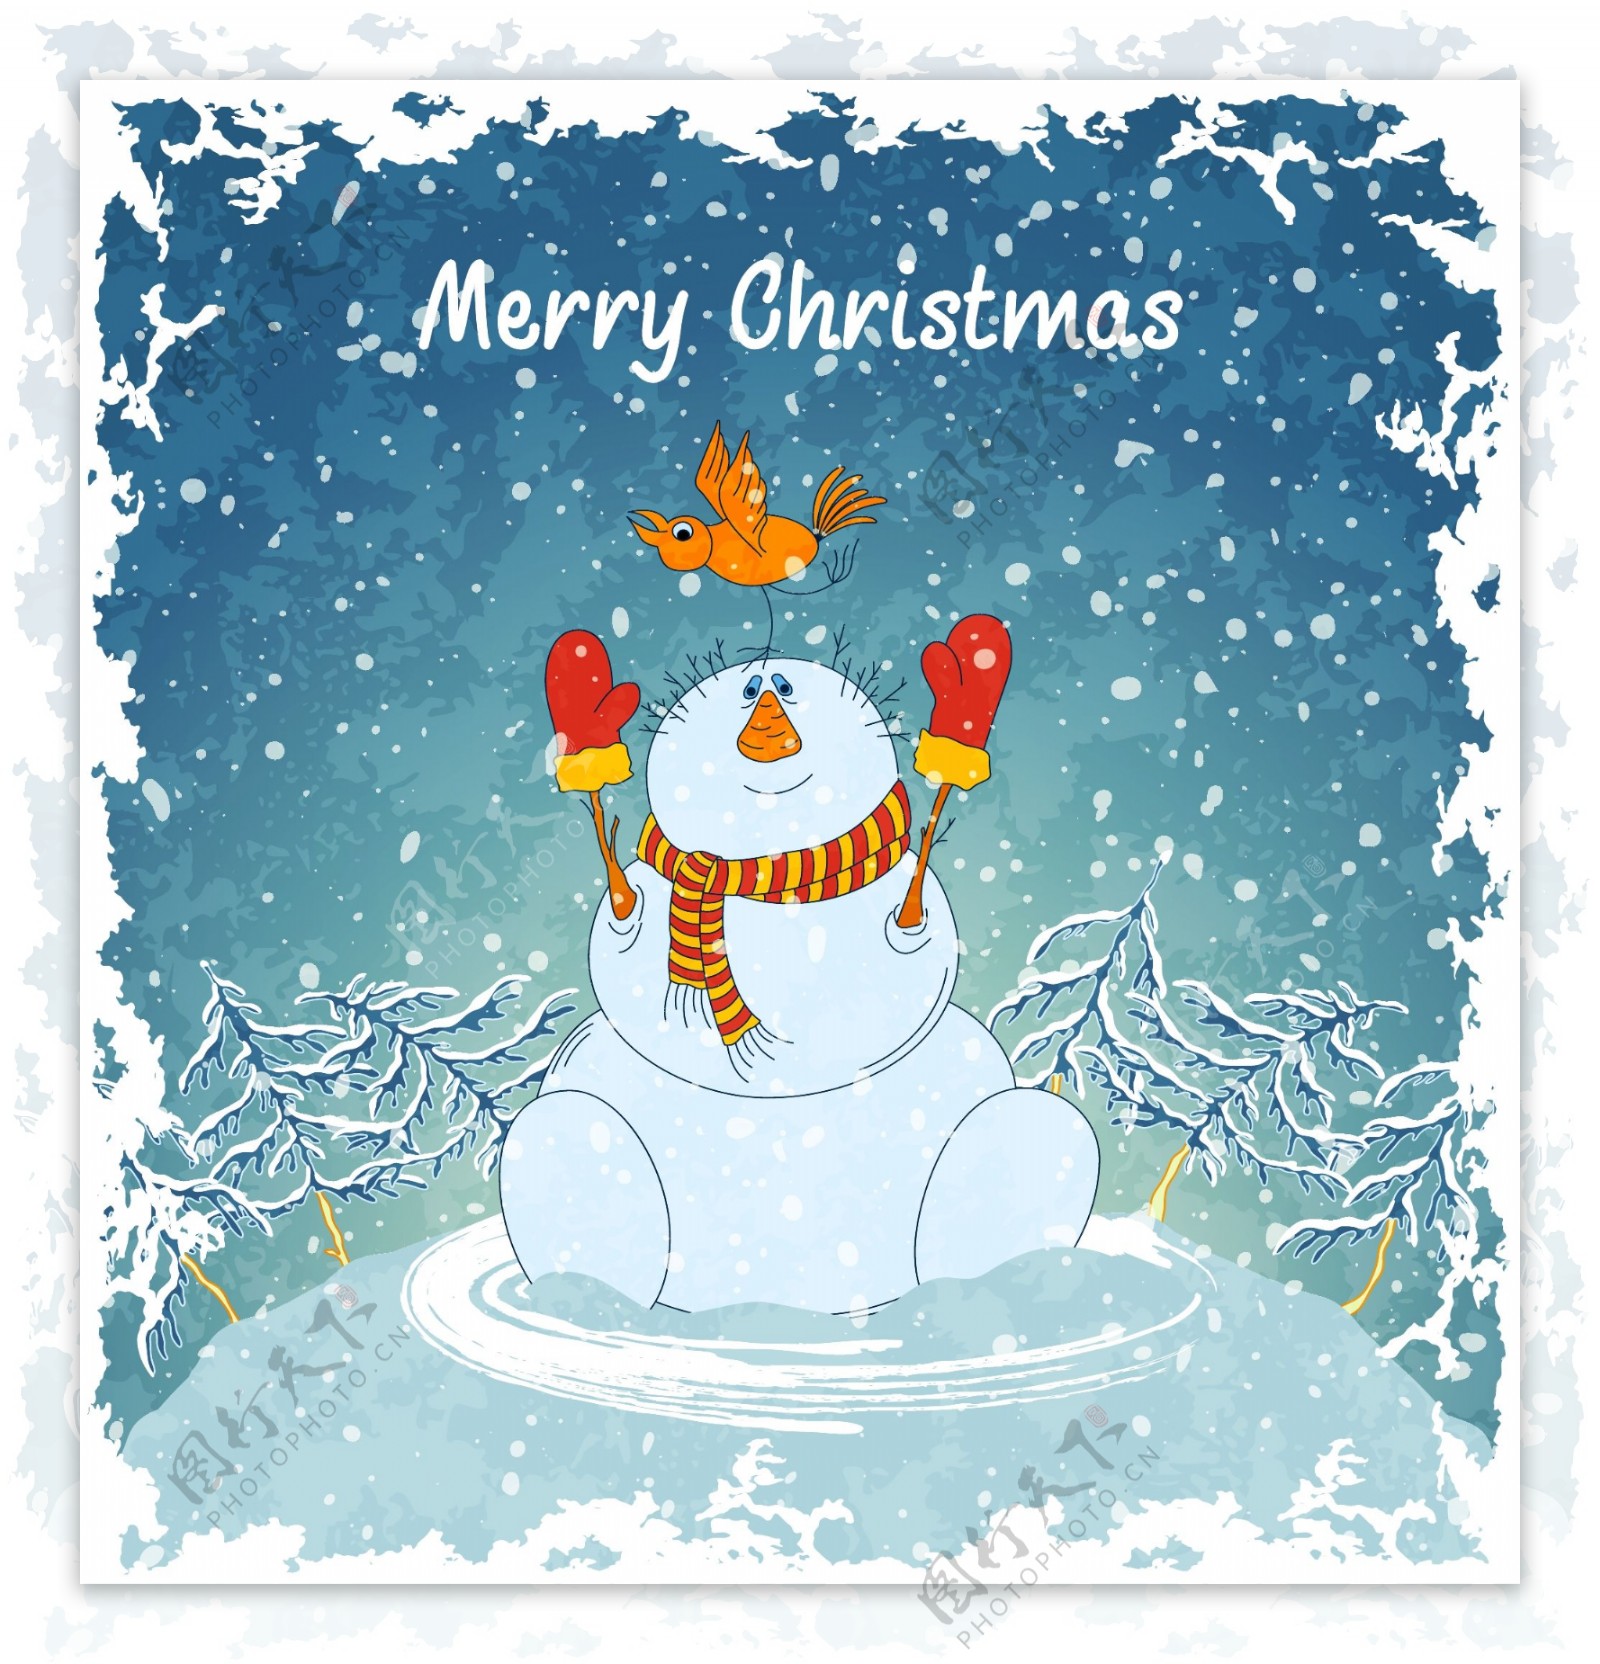 卡通圣诞雪人与小鸟矢量素材